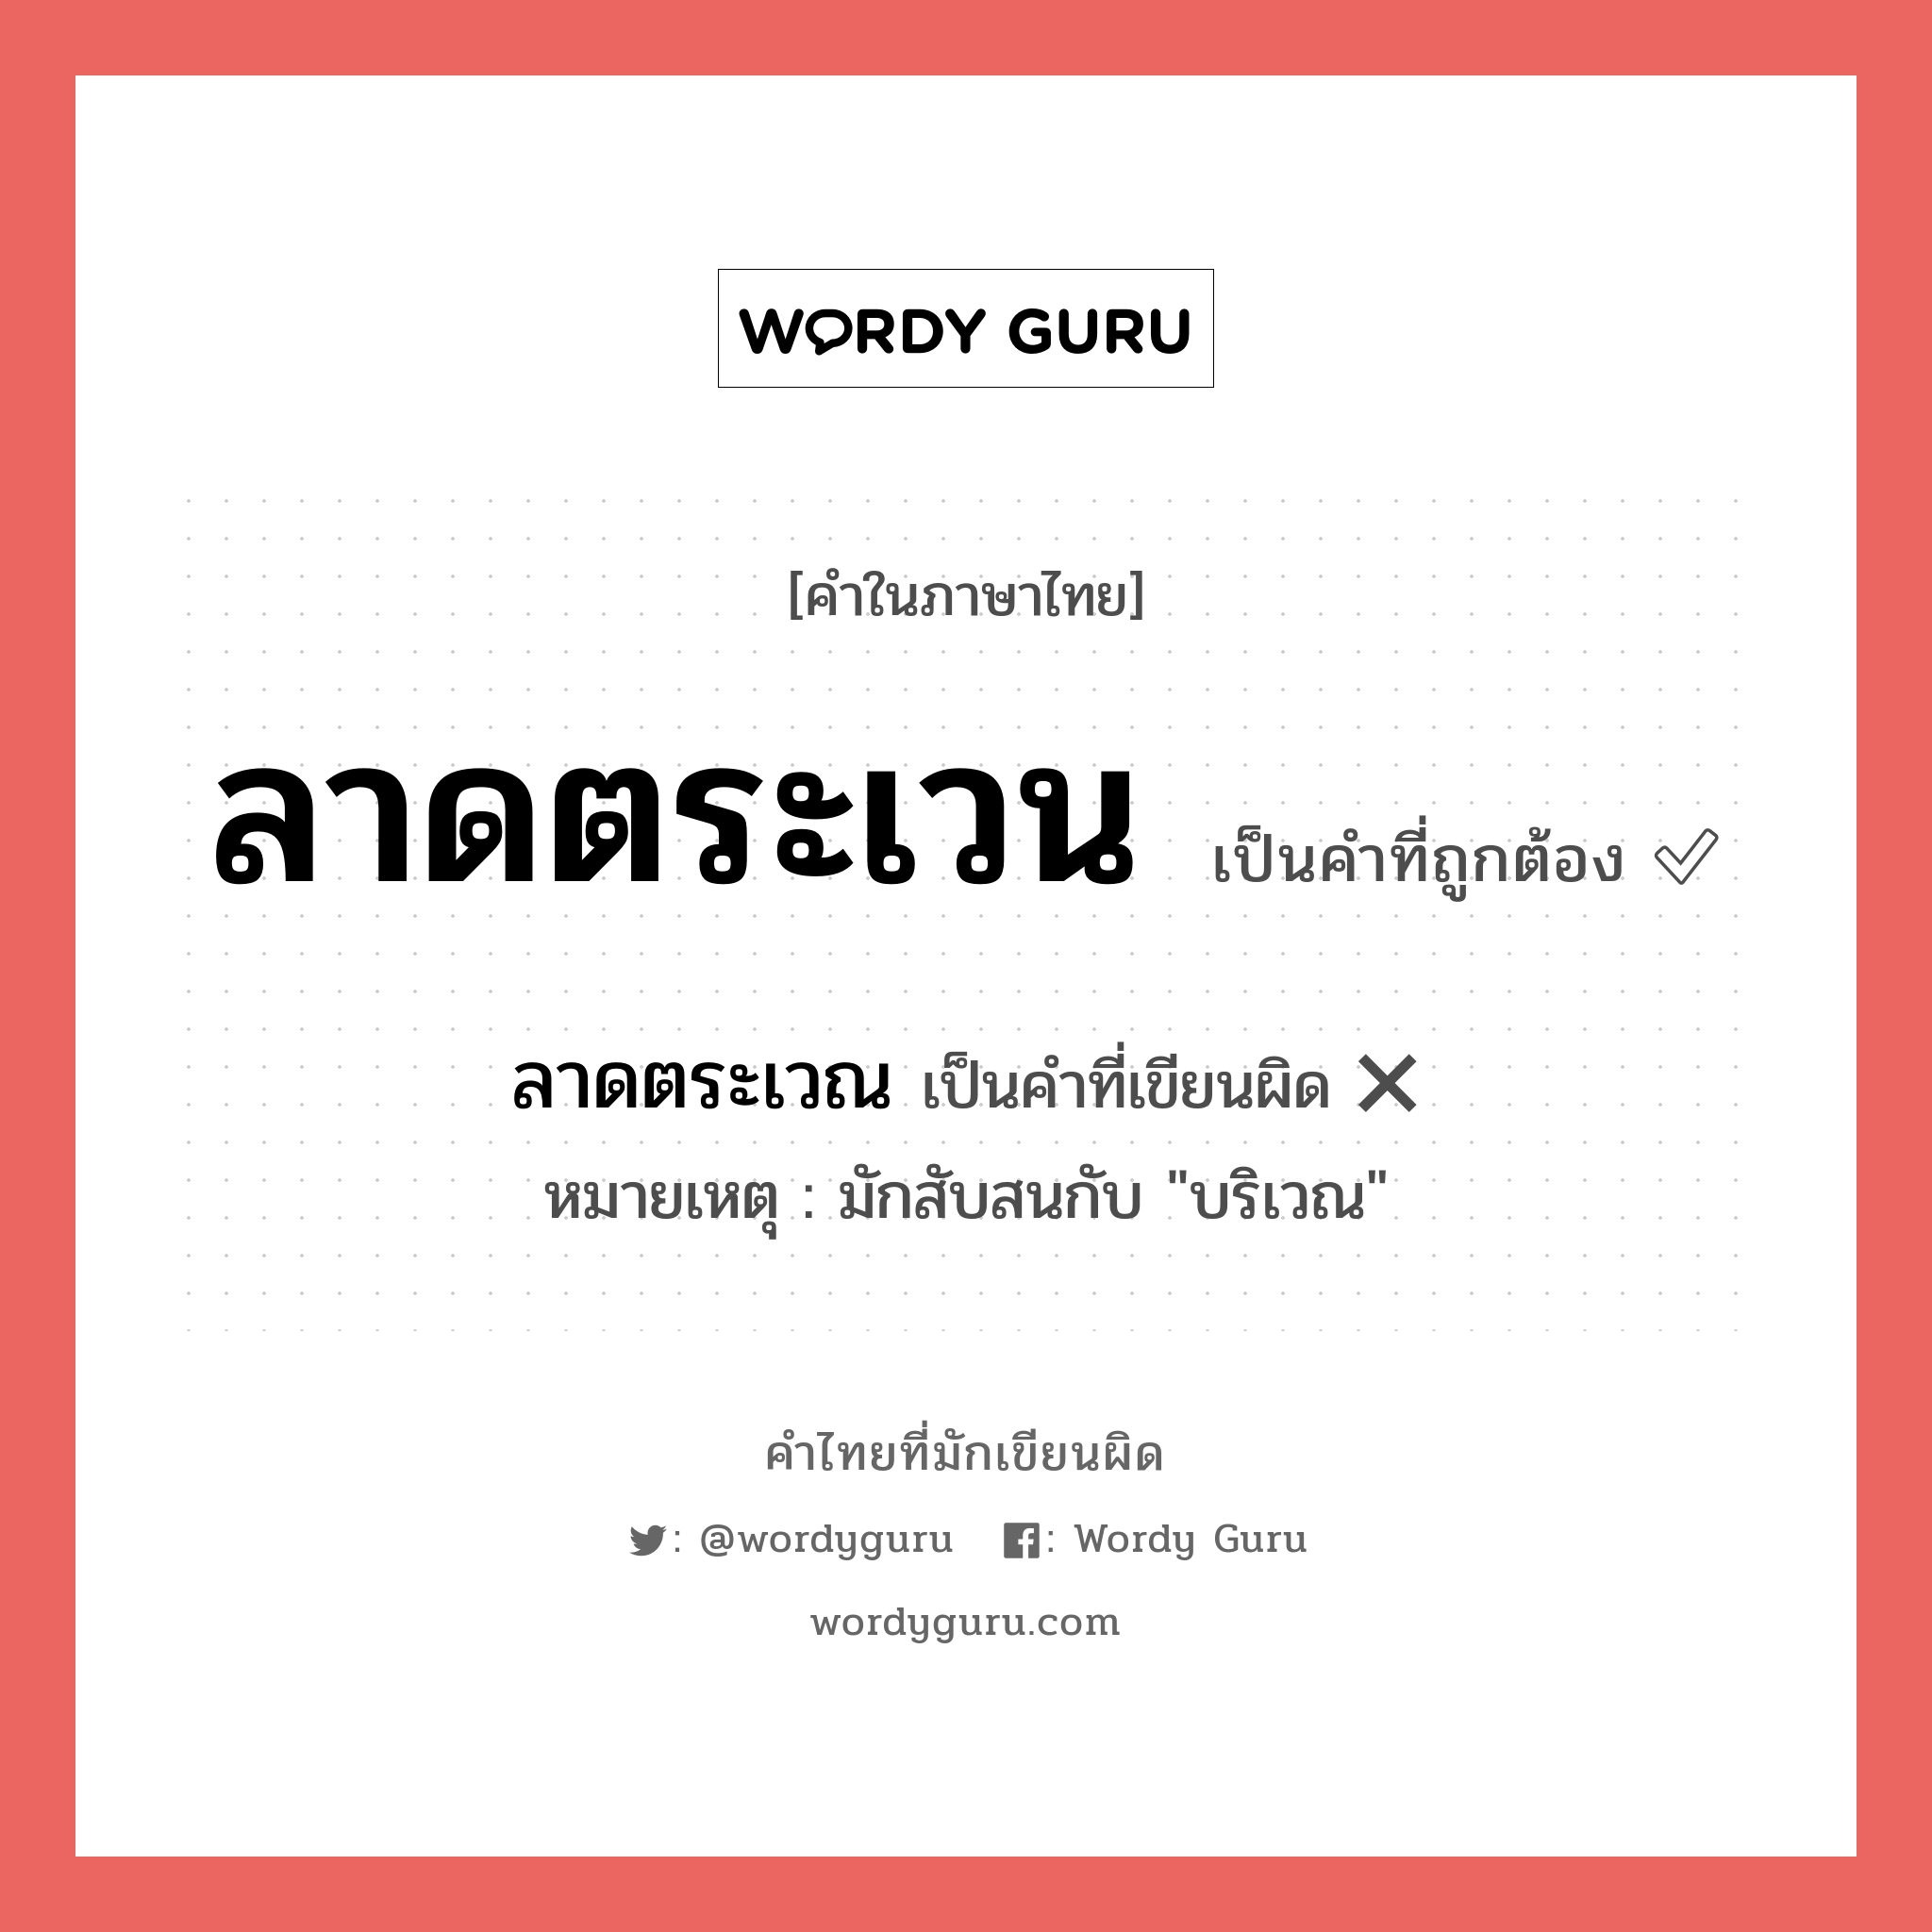 ลาดตระเวณ หรือ ลาดตระเวน คำไหนเขียนถูก?, คำในภาษาไทยที่มักเขียนผิด ลาดตระเวณ คำที่ผิด ❌ ลาดตระเวน หมายเหตุ มักสับสนกับ "บริเวณ"